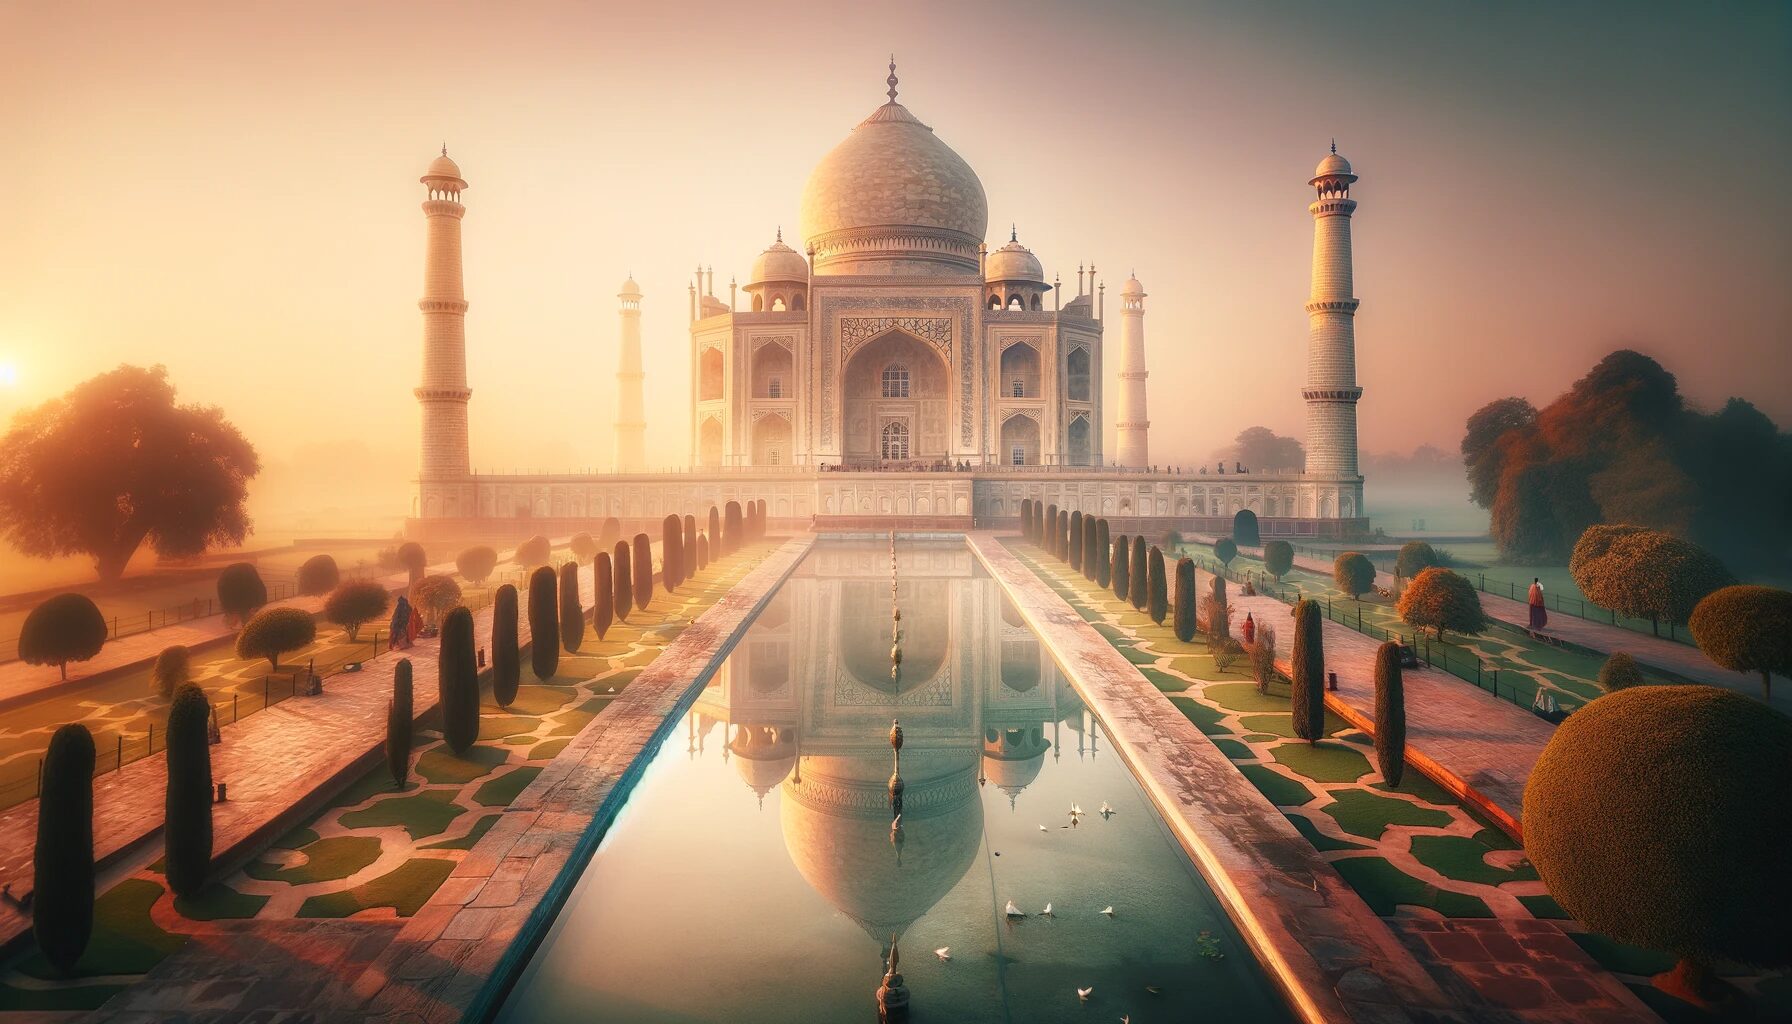 インド・夜明けのタージマハルの輝き - 無料写真素材